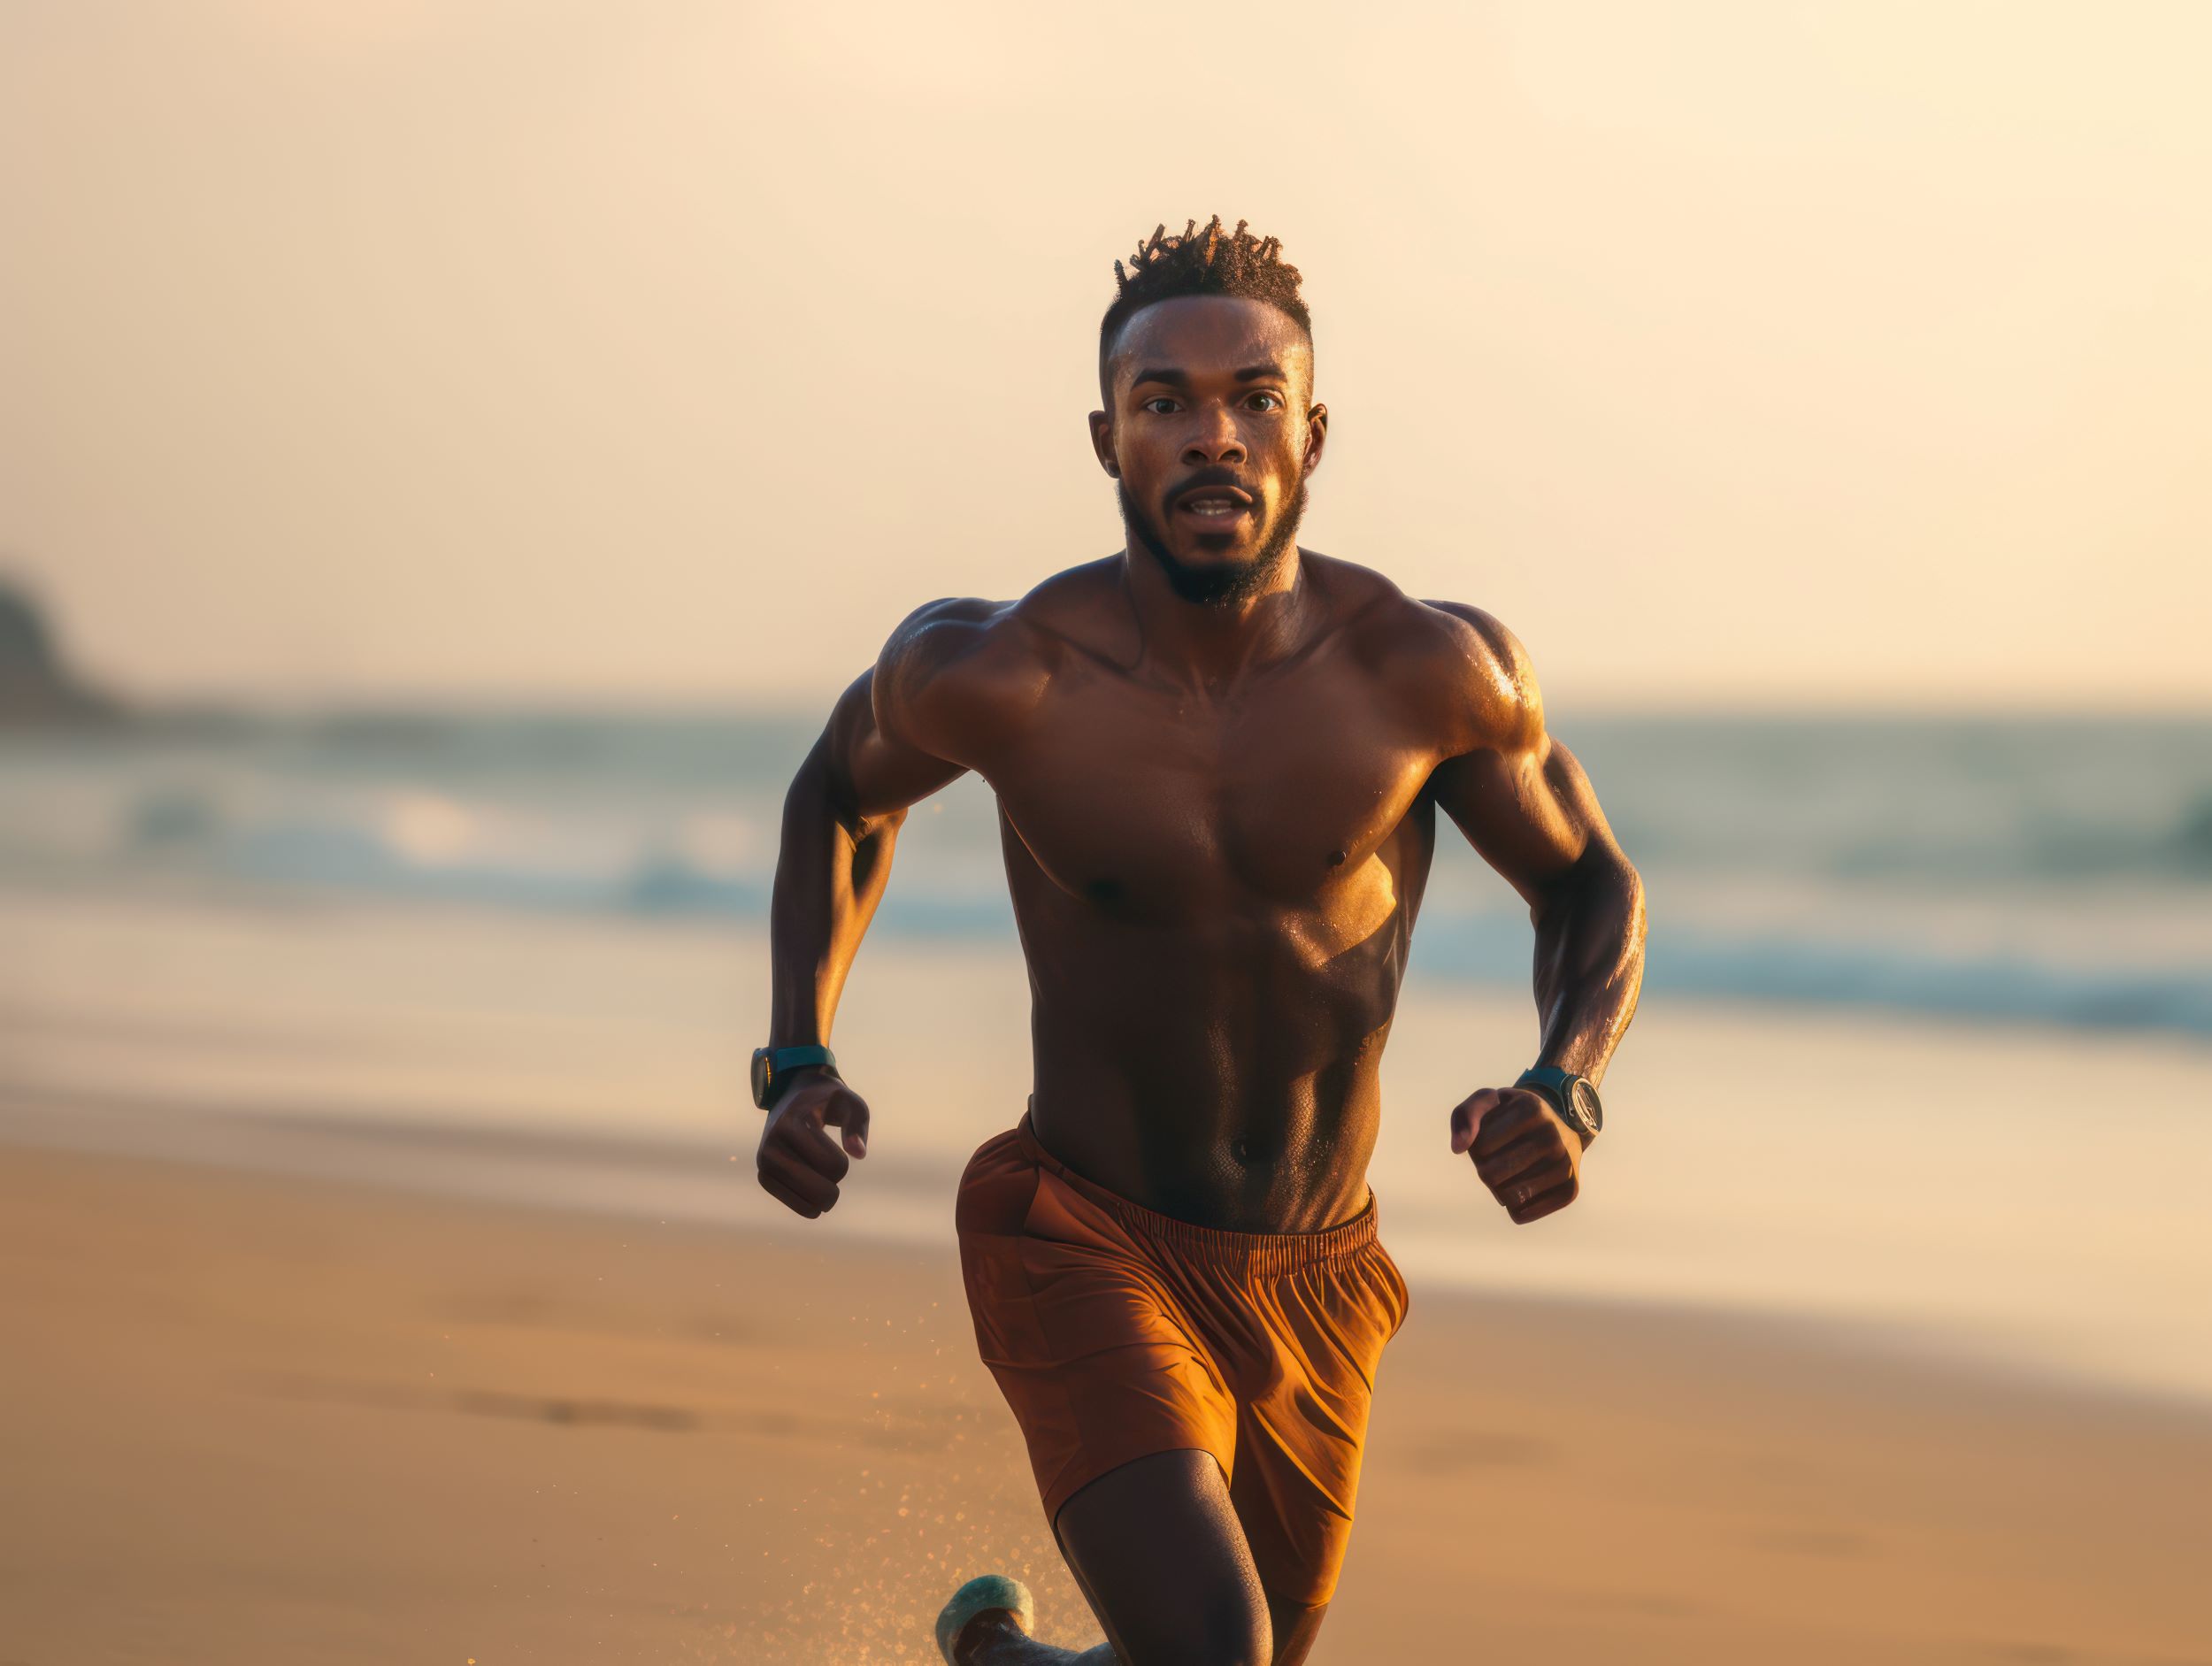 A man running on a beach.